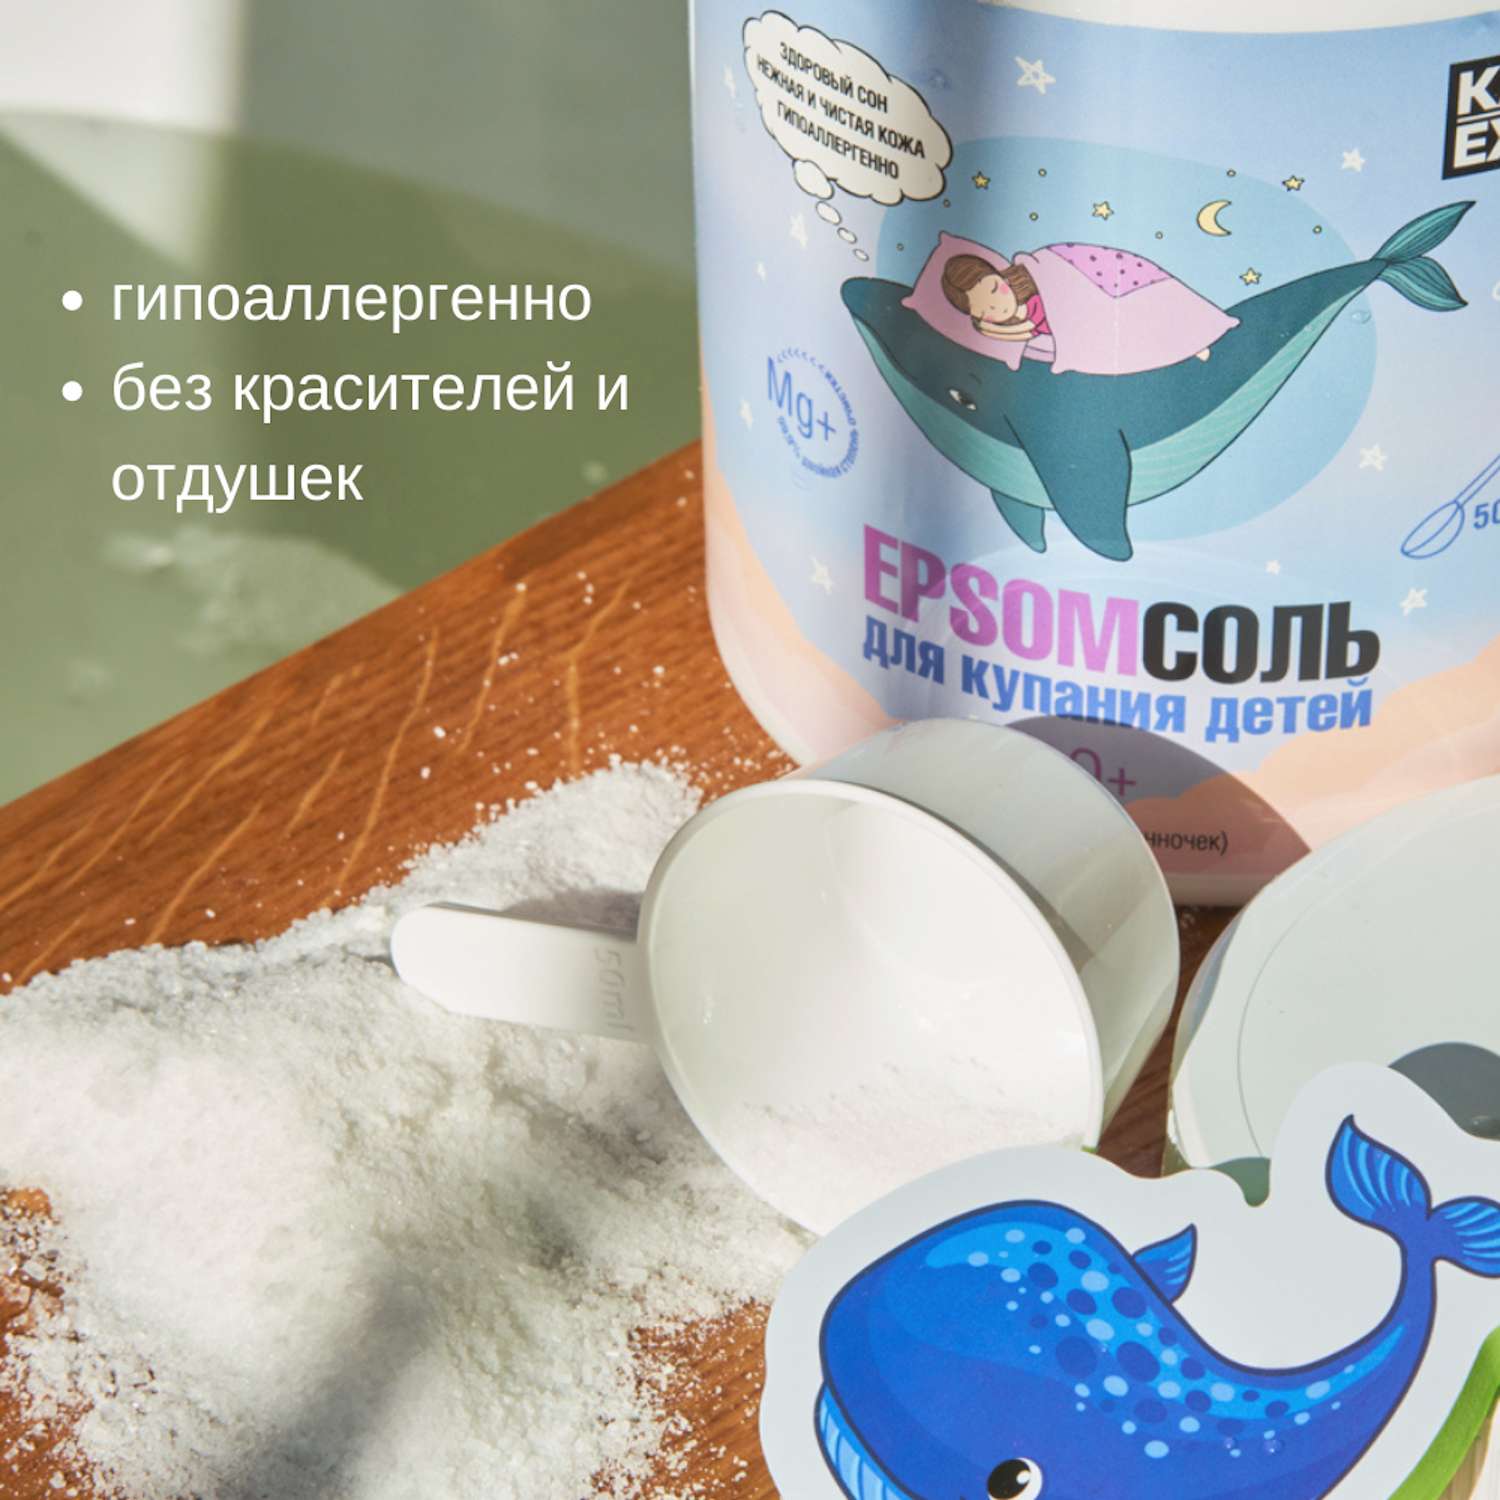 Соль для ванны Kast-Expo 0+ Epsom английская детская 0.6кг - фото 3